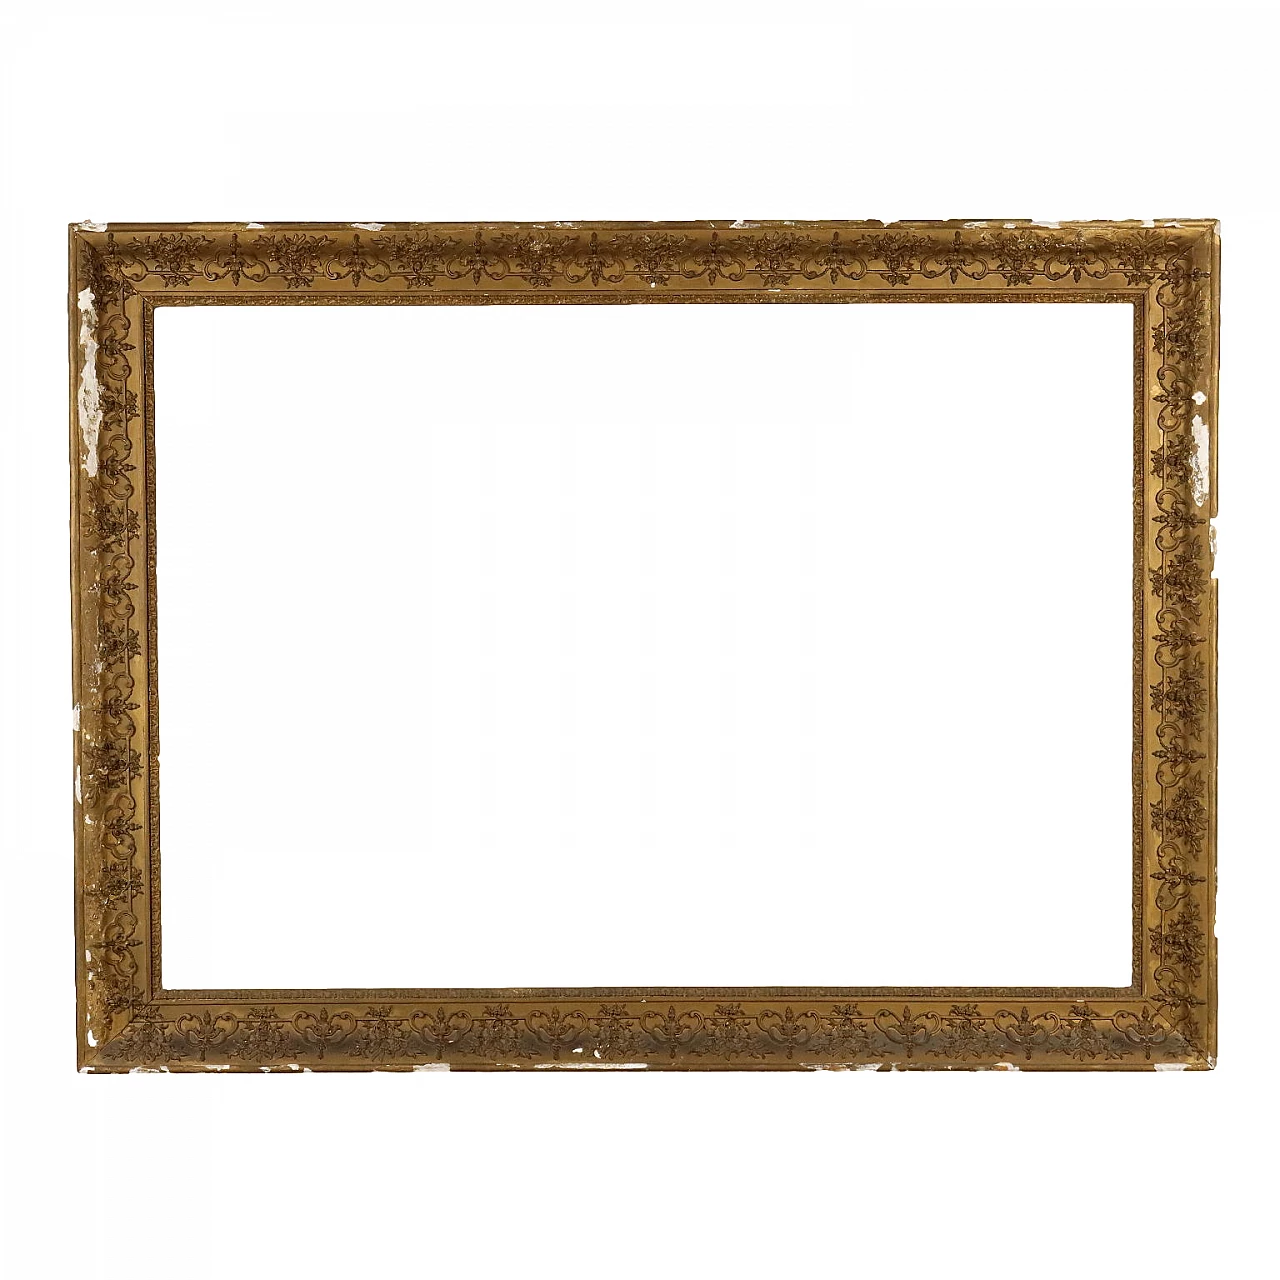 Pastille-carved and gilded frame 1